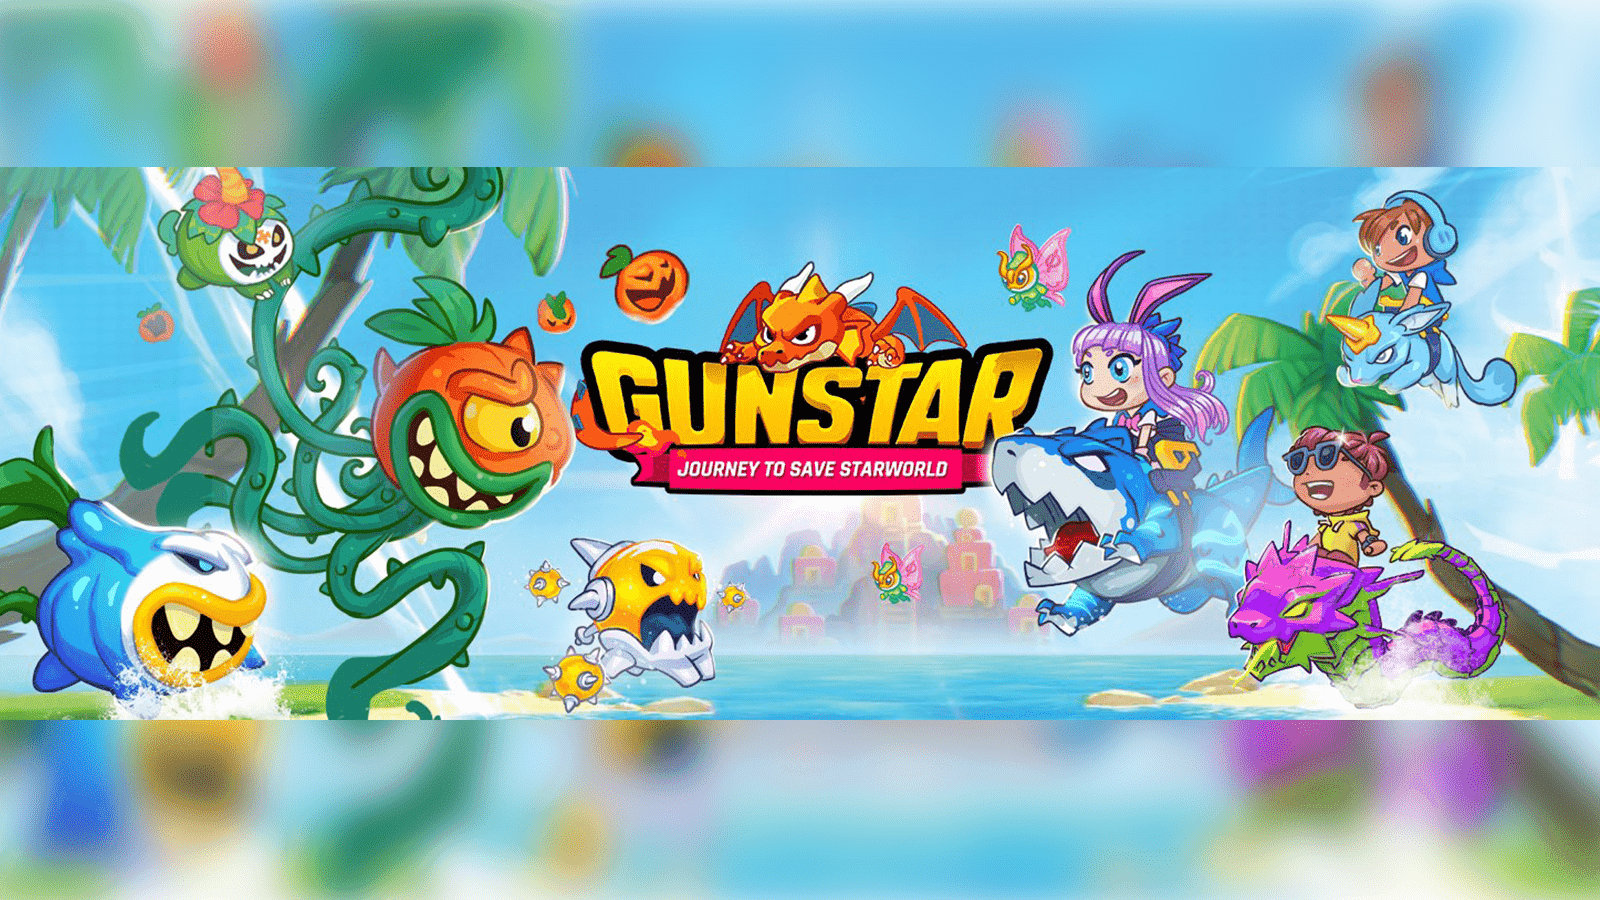 GunStar Metaverse